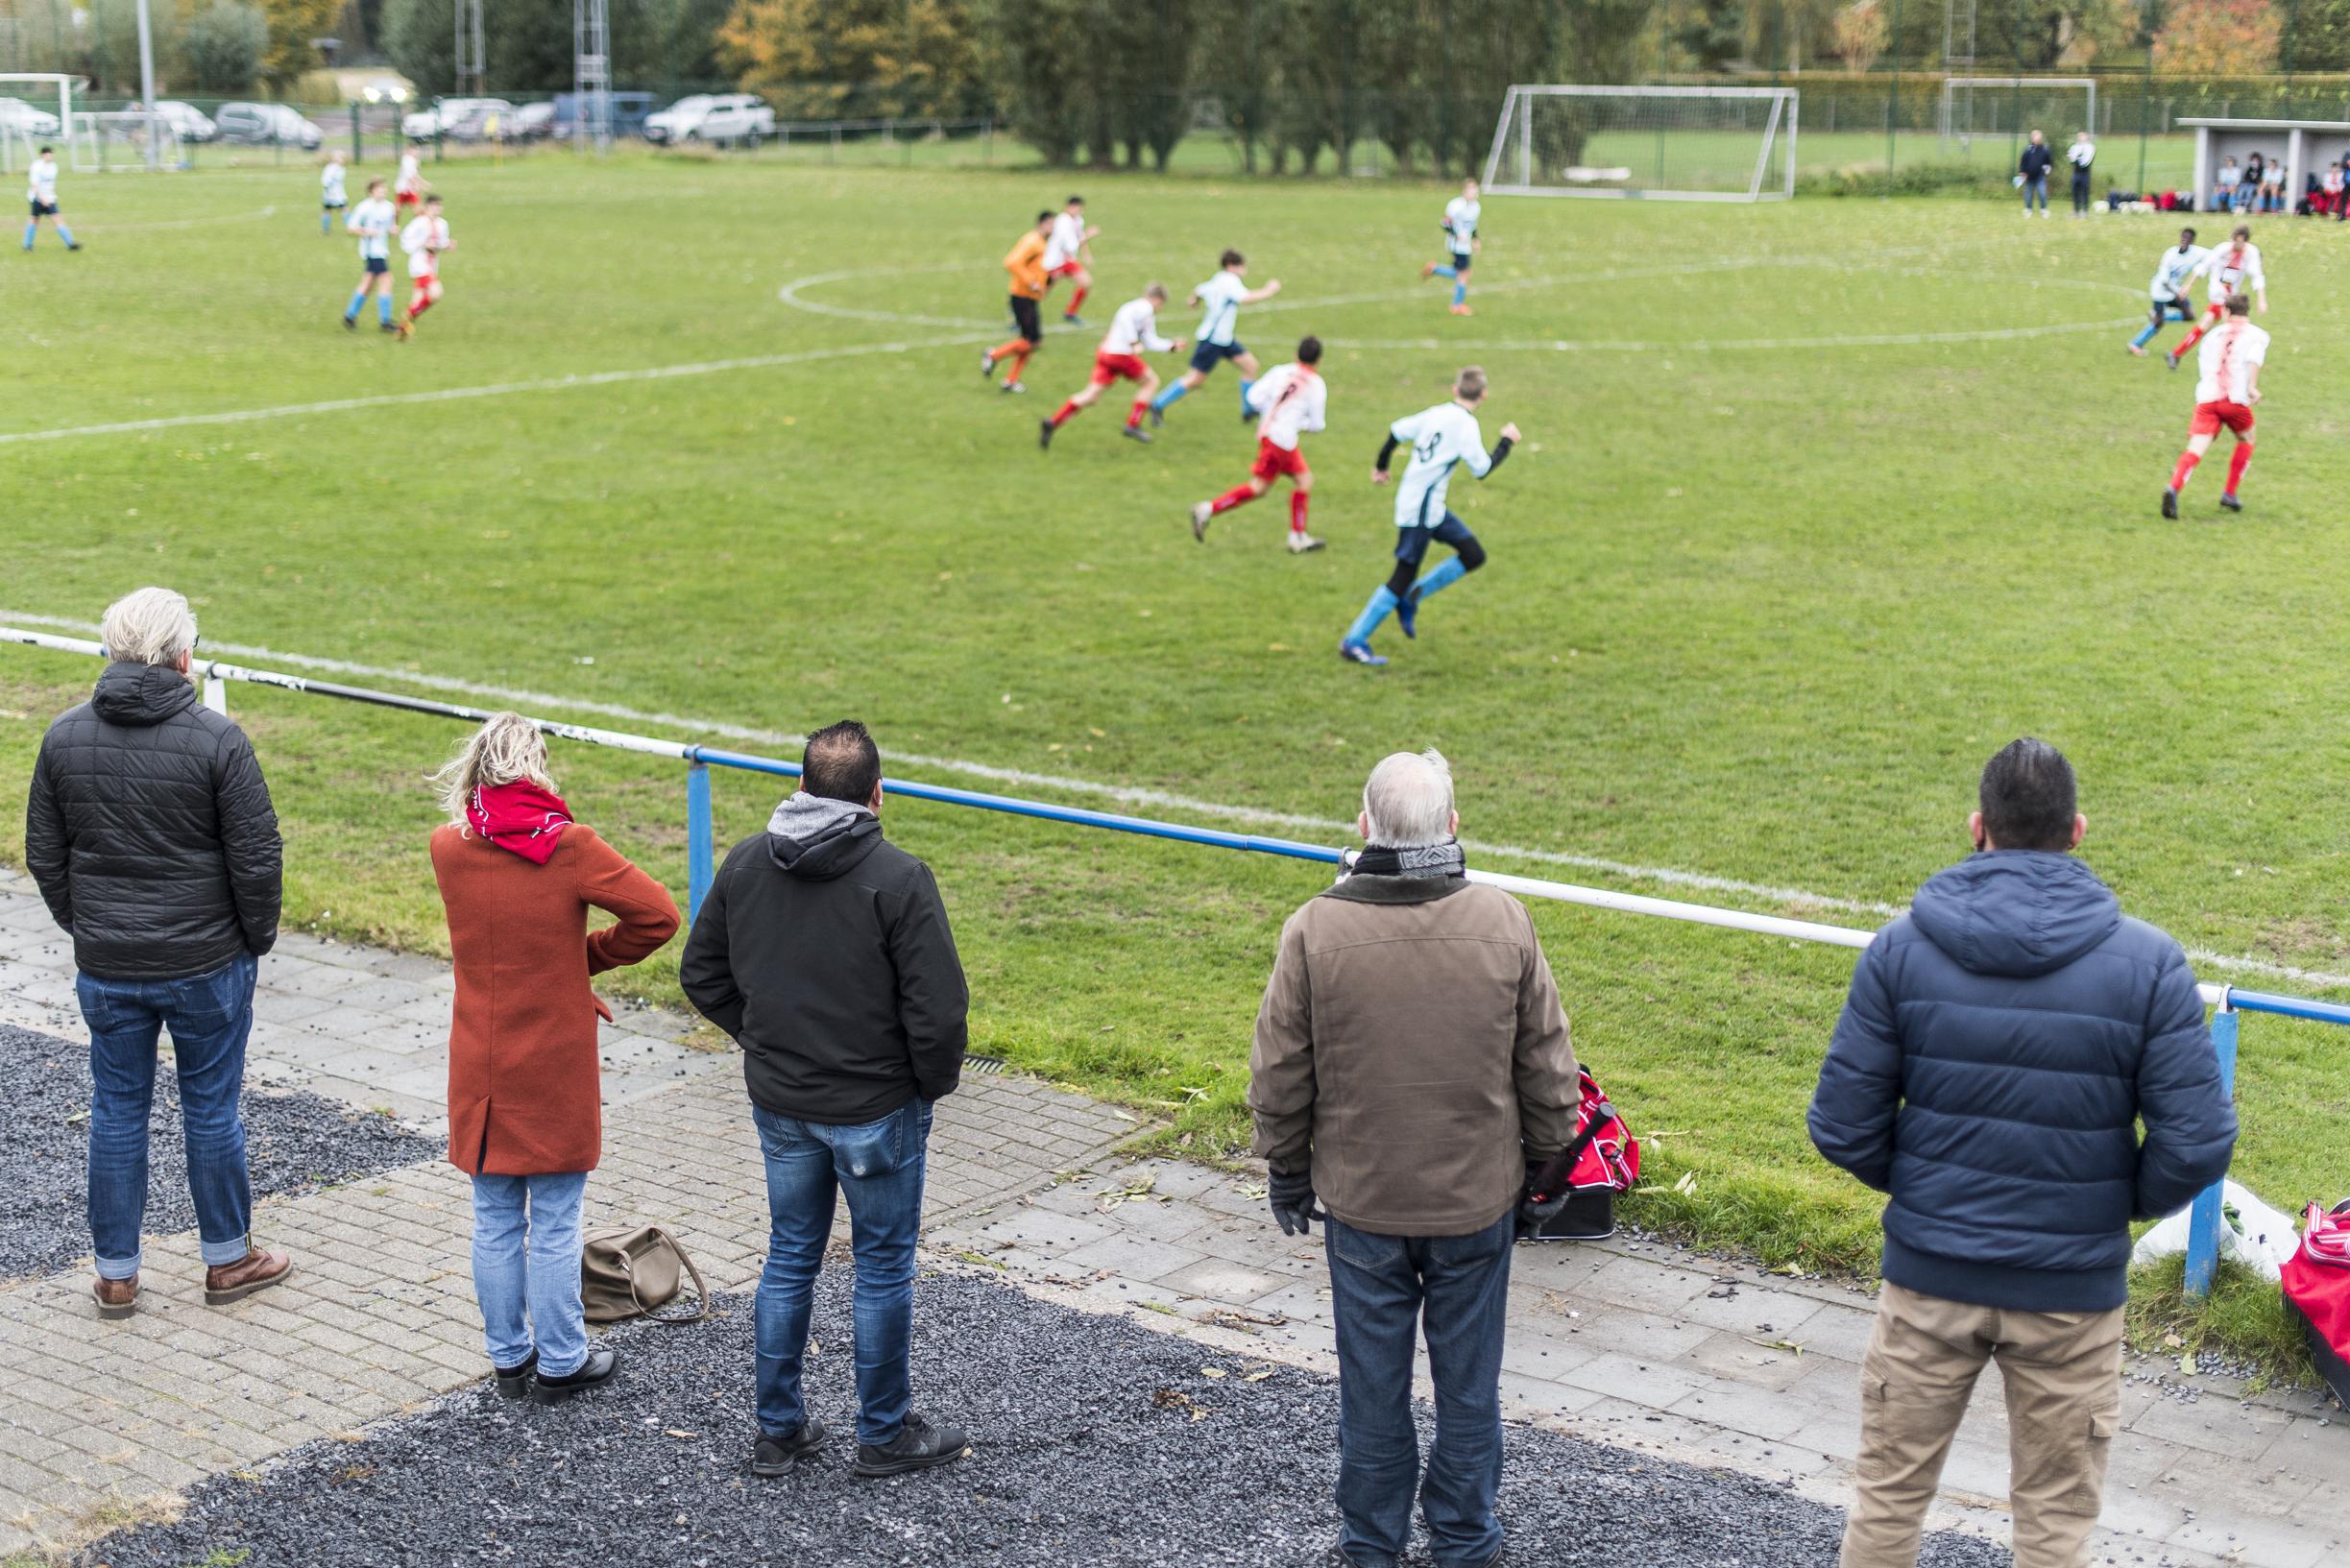 Van ‘kankernigger’ tot ‘papzak’: dit hoor je op en rond de Limburgse voetbalvelden